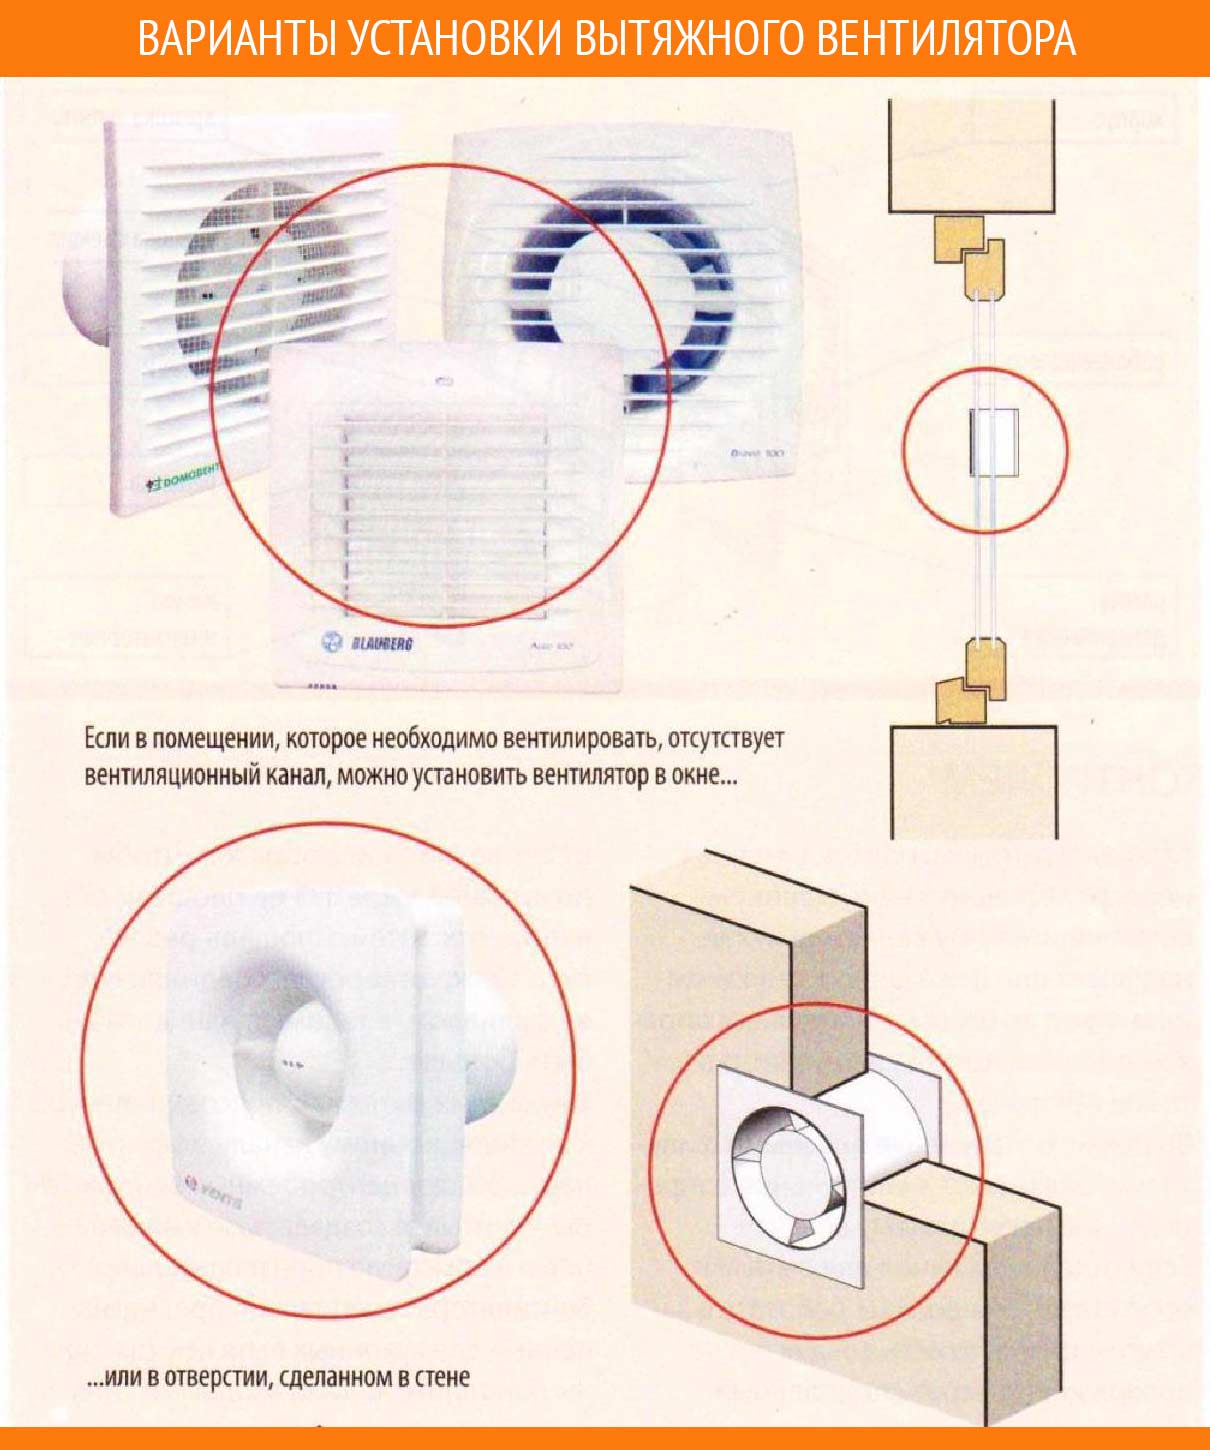 Вытяжной вентилятор для ванной: выбор и установка